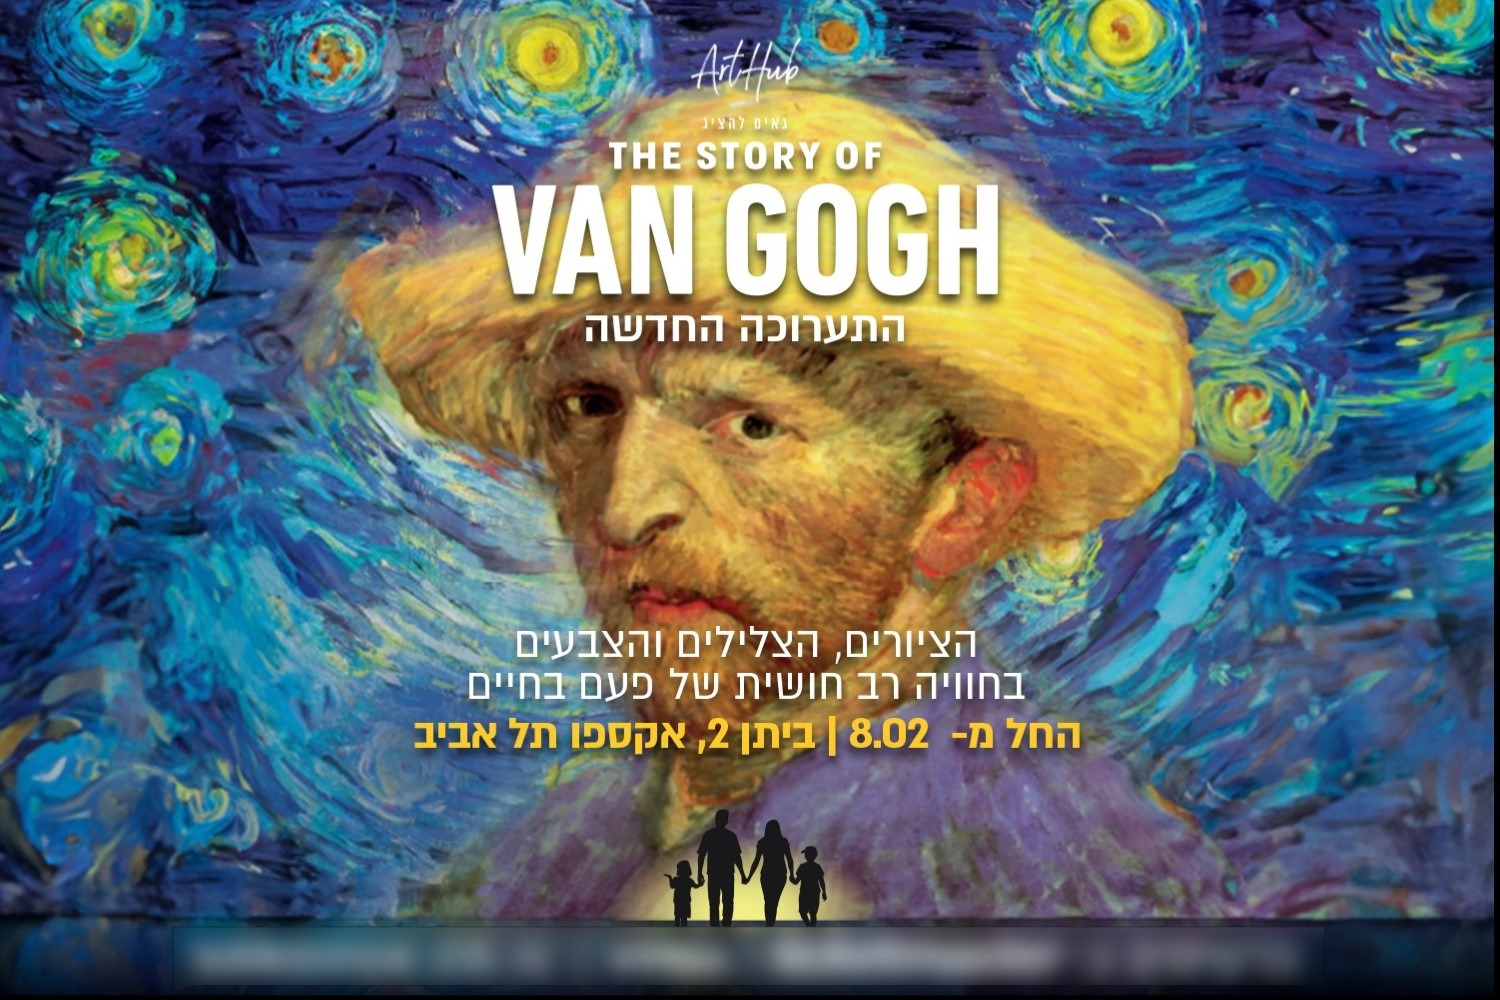 The story of Van Gogh — Новая выставка